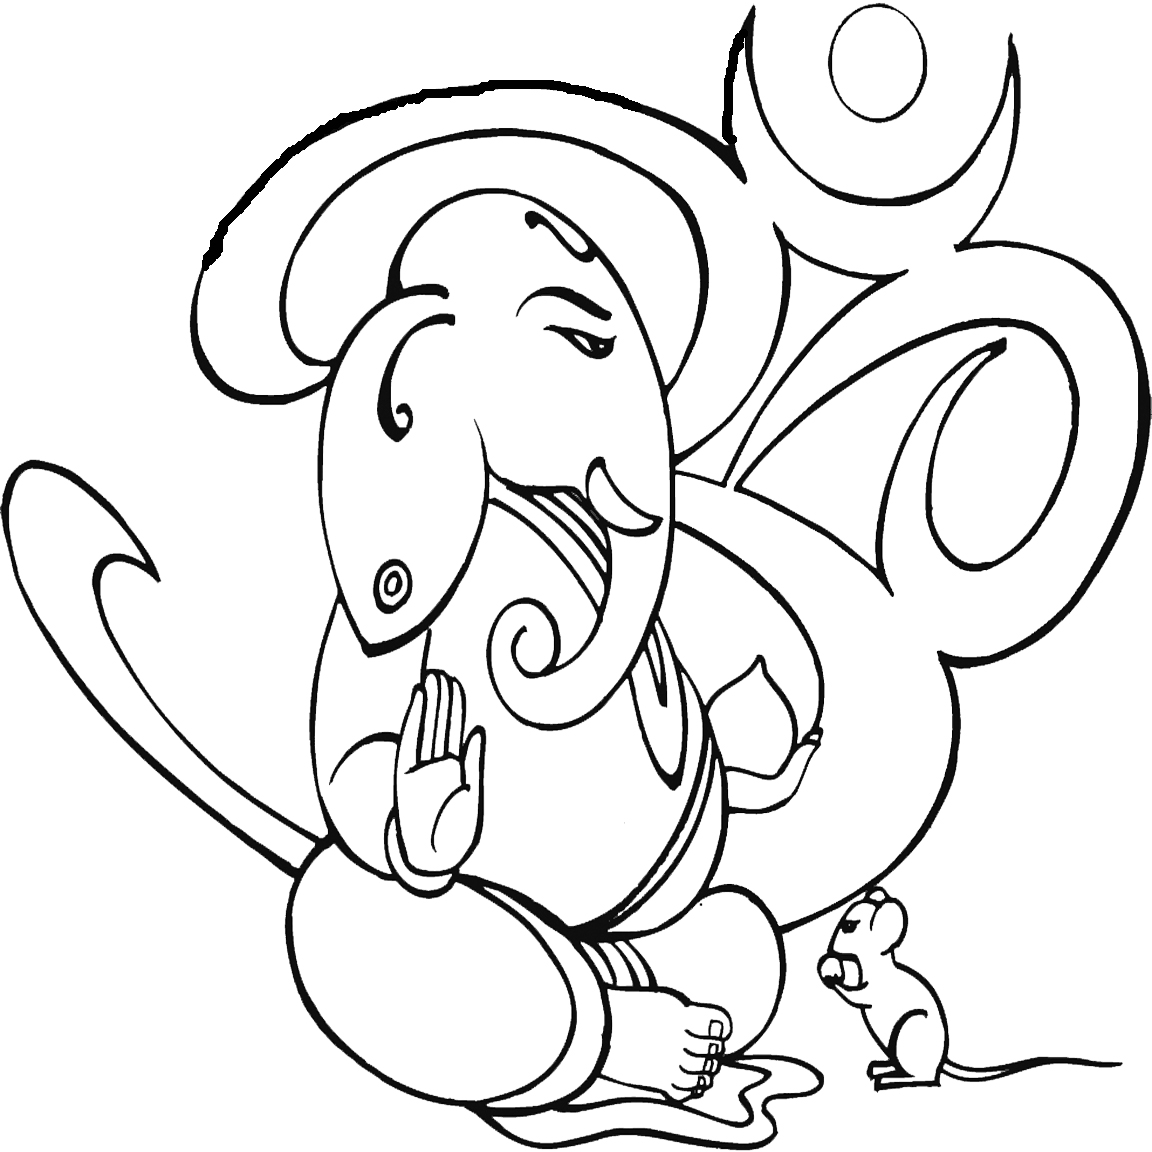 Lord Ganesha Drawing - Cliparts.co